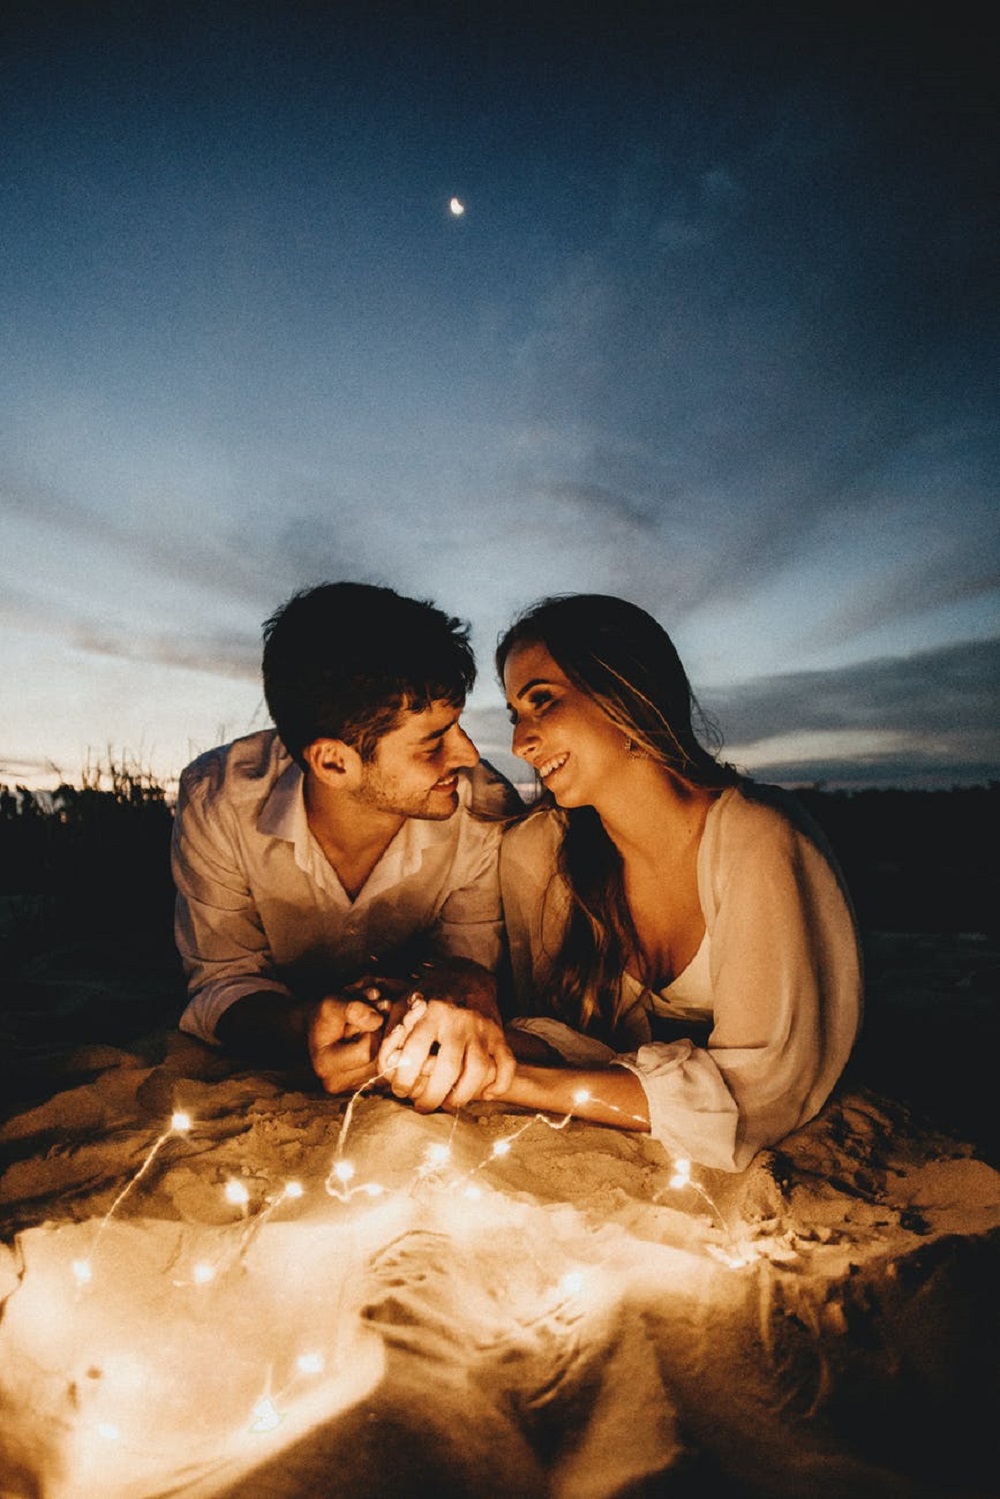 Îndrăgostiți care se țin de mână și se bucură de o întâlnire în aer liber, noaptea, într-o atmosferă romantică, înconjurați de beculețe și cu luna în fundal